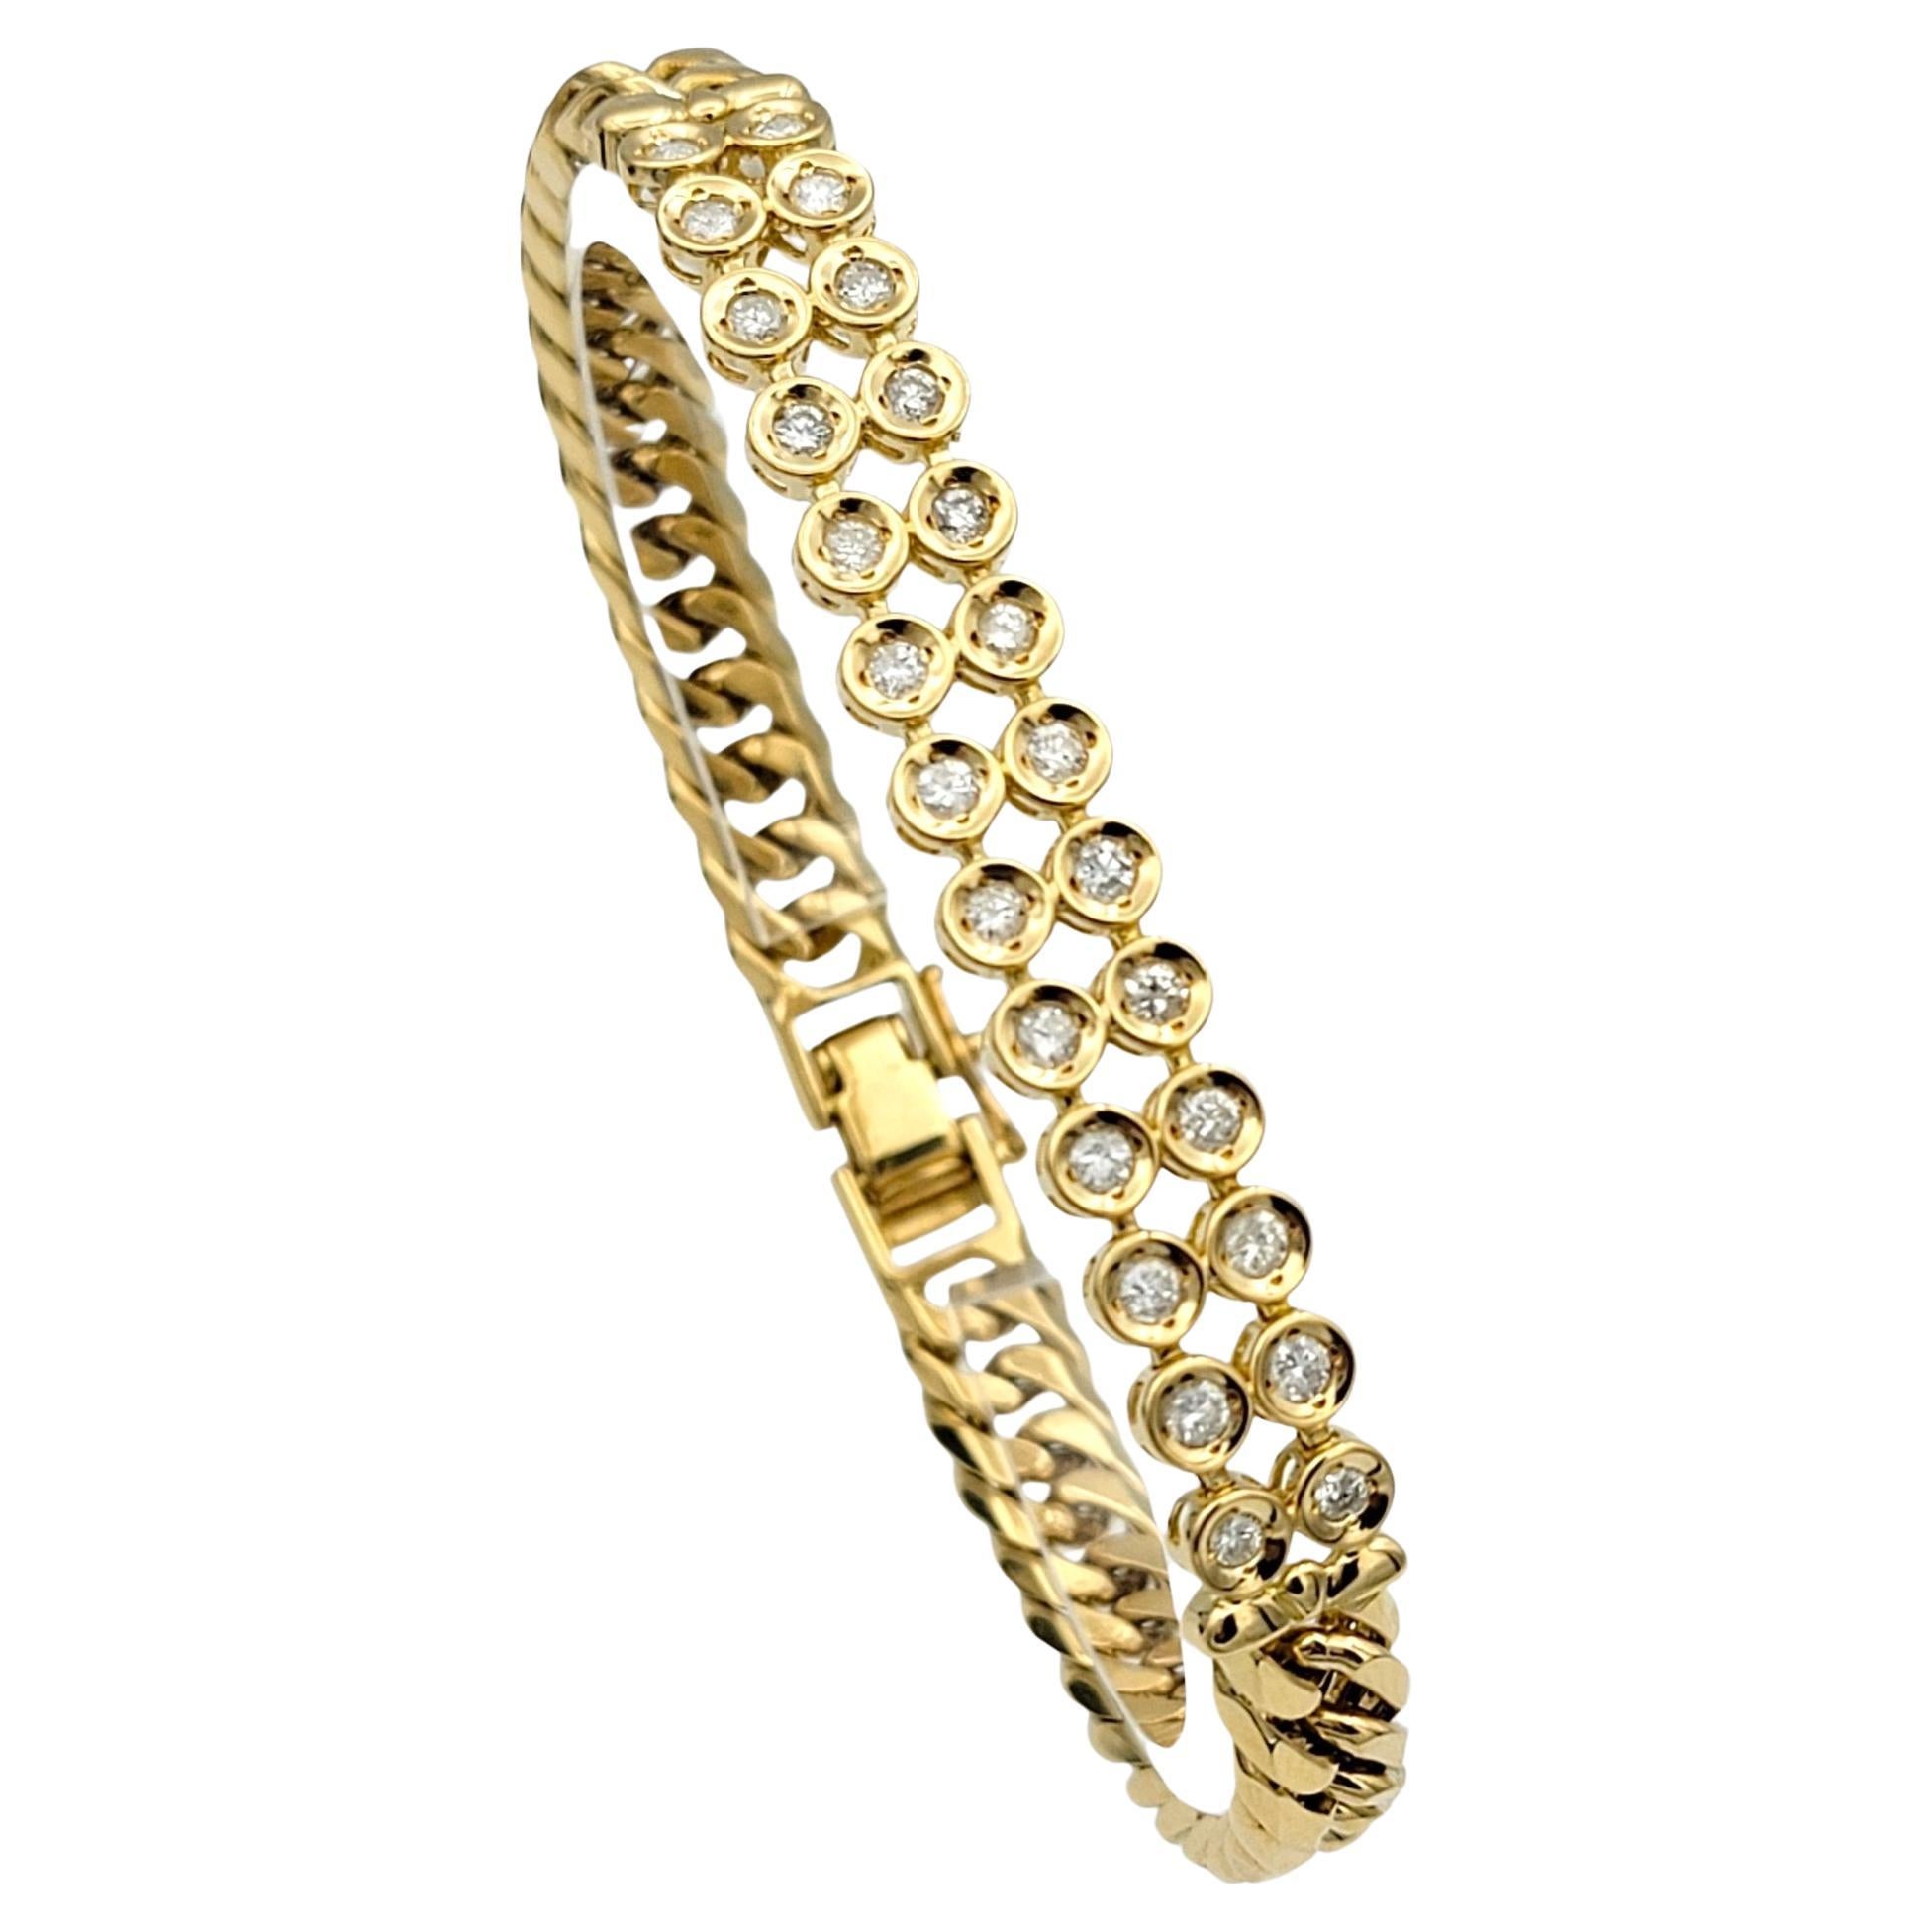 La circonférence intérieure de ce bracelet mesure 6,88 pouces et s'adaptera confortablement à un poignet de 6,75 pouces. 

Ce bracelet exquis allie l'élégance classique d'une chaîne à maillons à la beauté éblouissante de diamants sertis en chaton.